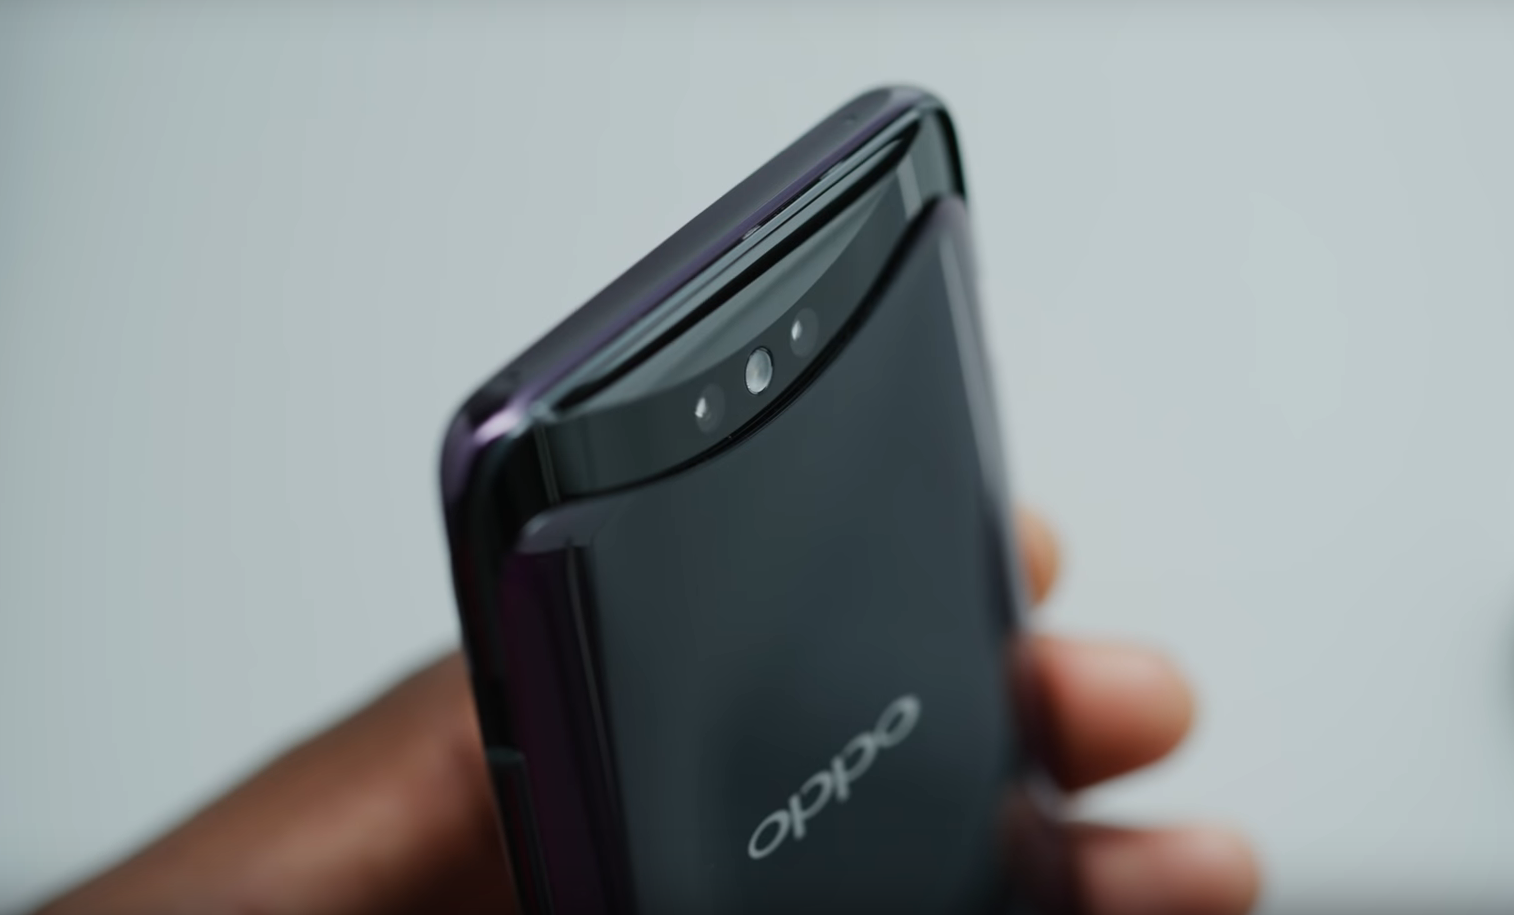 Tour d'horizon des avantages et inconvénients du smartphone Oppo Find X